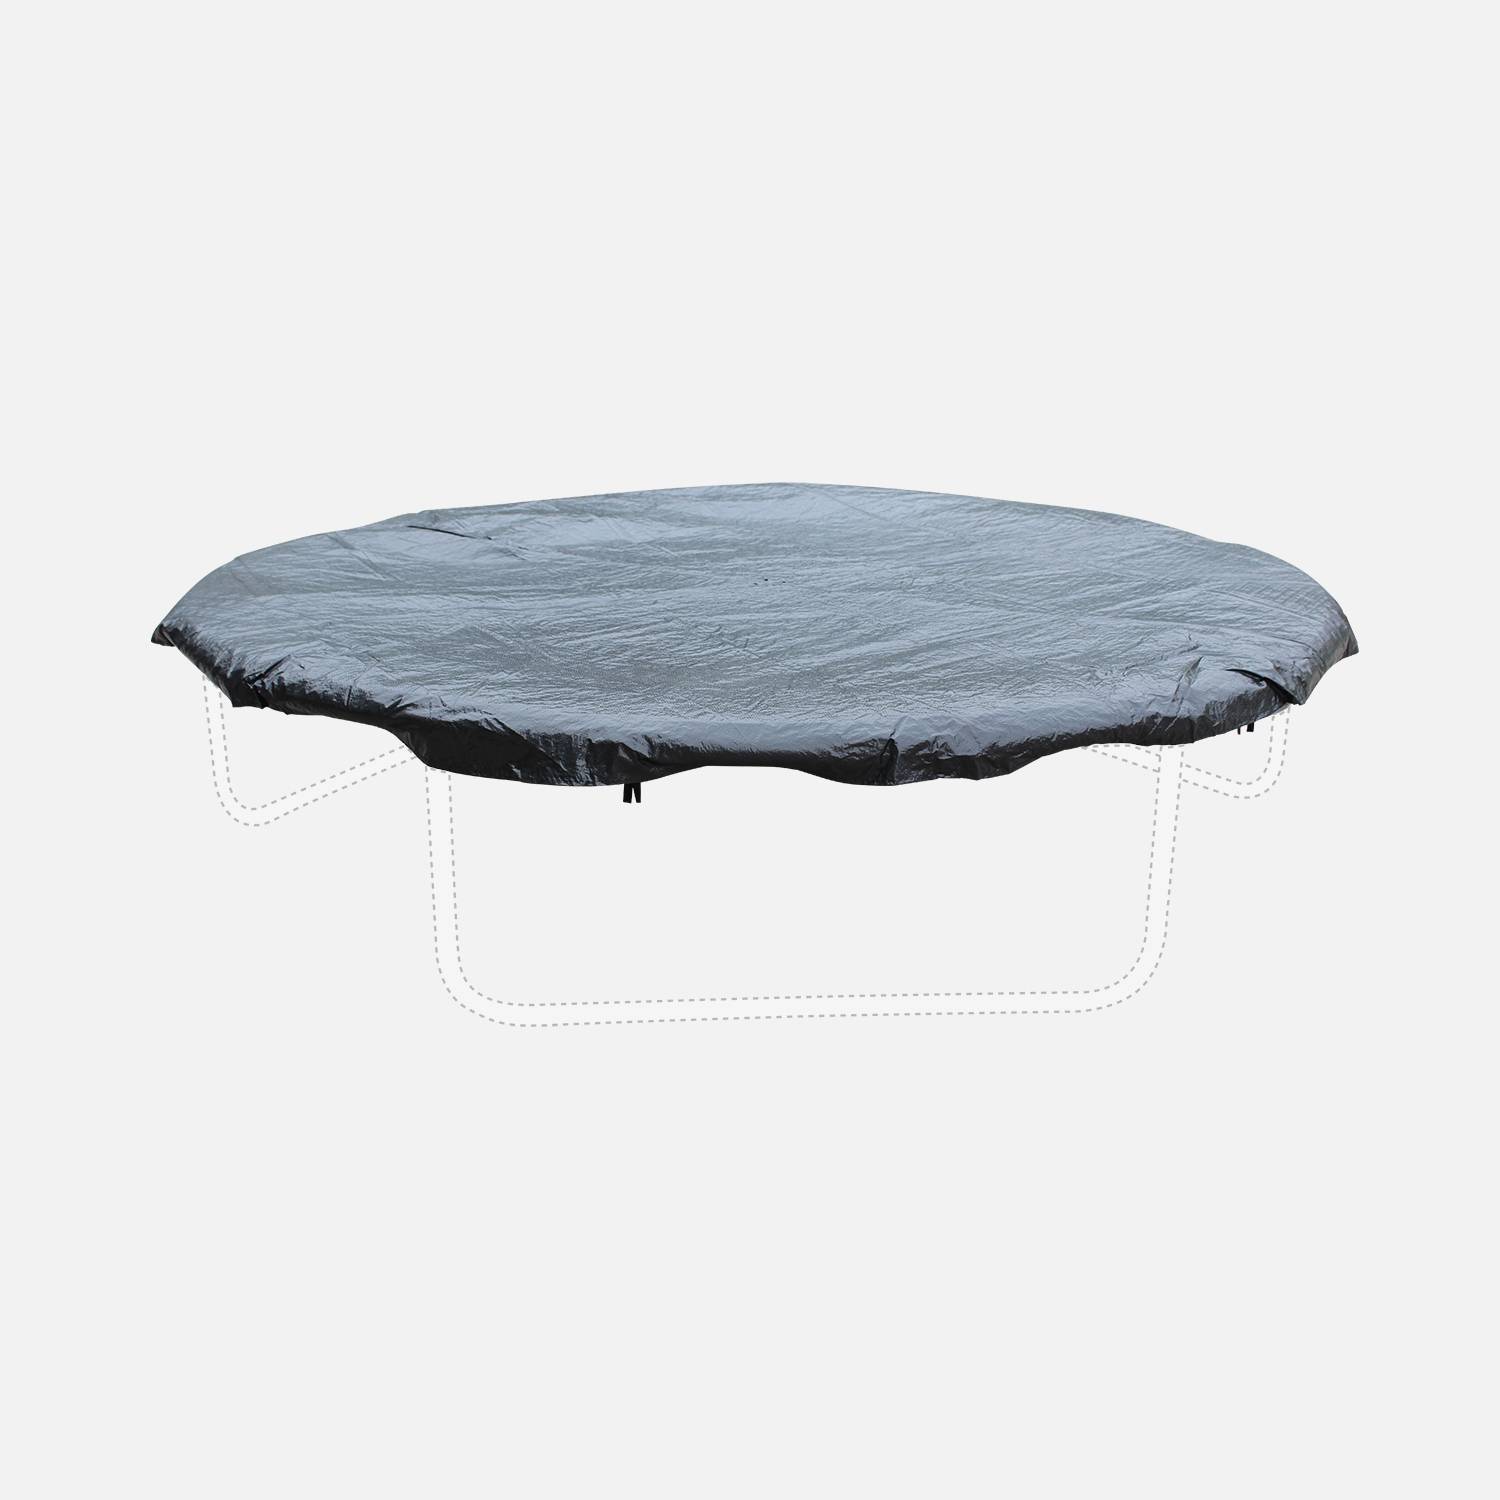 Bâche de protection pour trampoline 245/250CM - s'adapte parfaitement à toutes les marques de trampolines Photo1